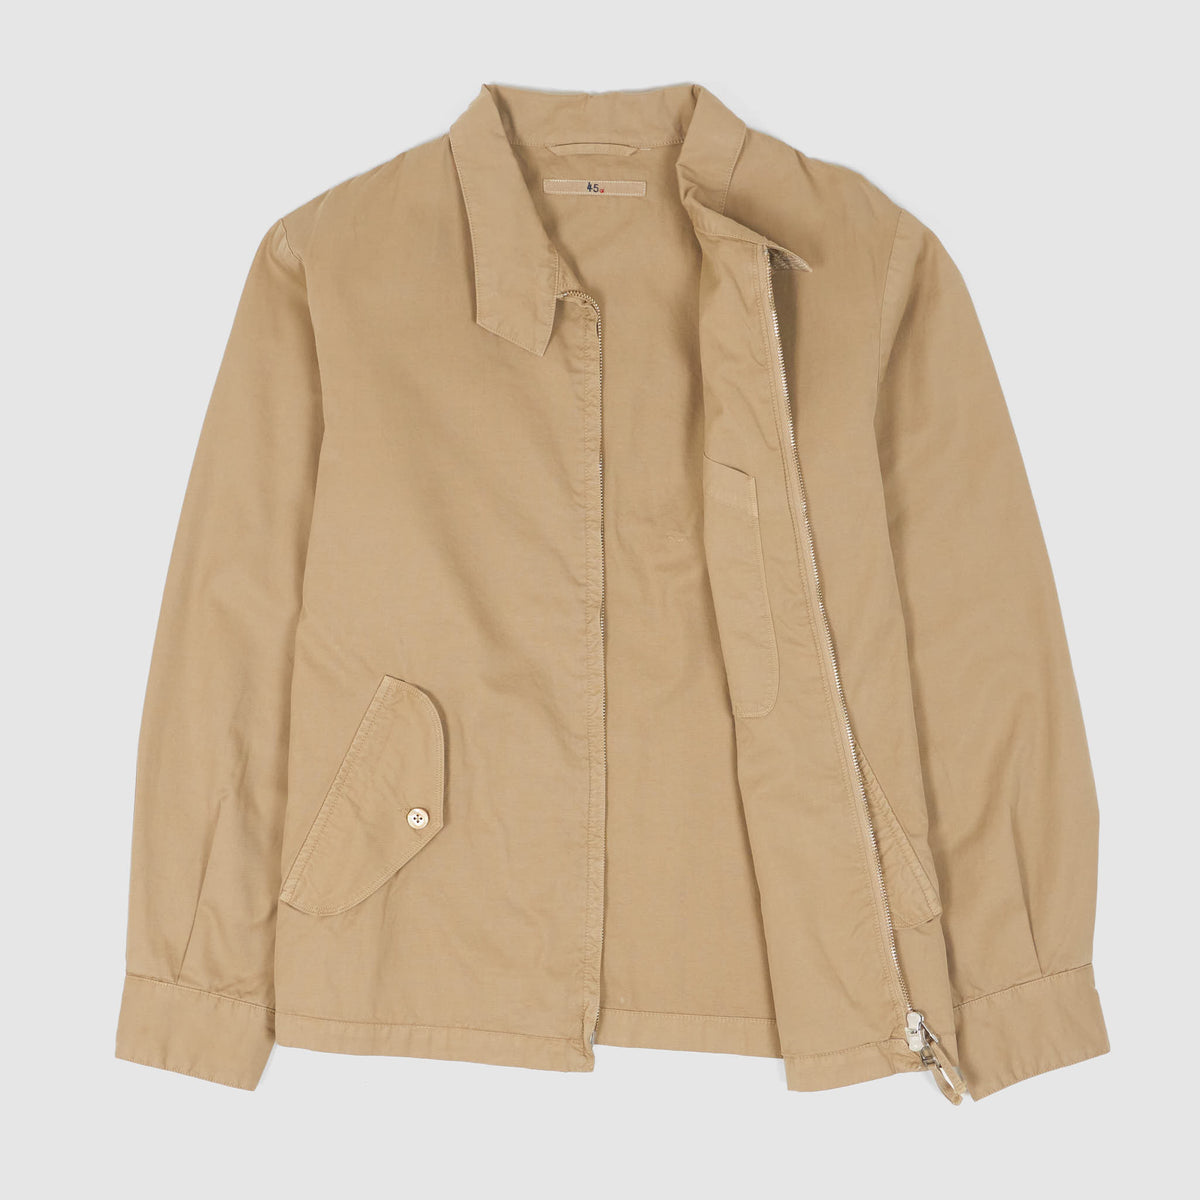 45r Lightweight Cotton Harrington Jacket